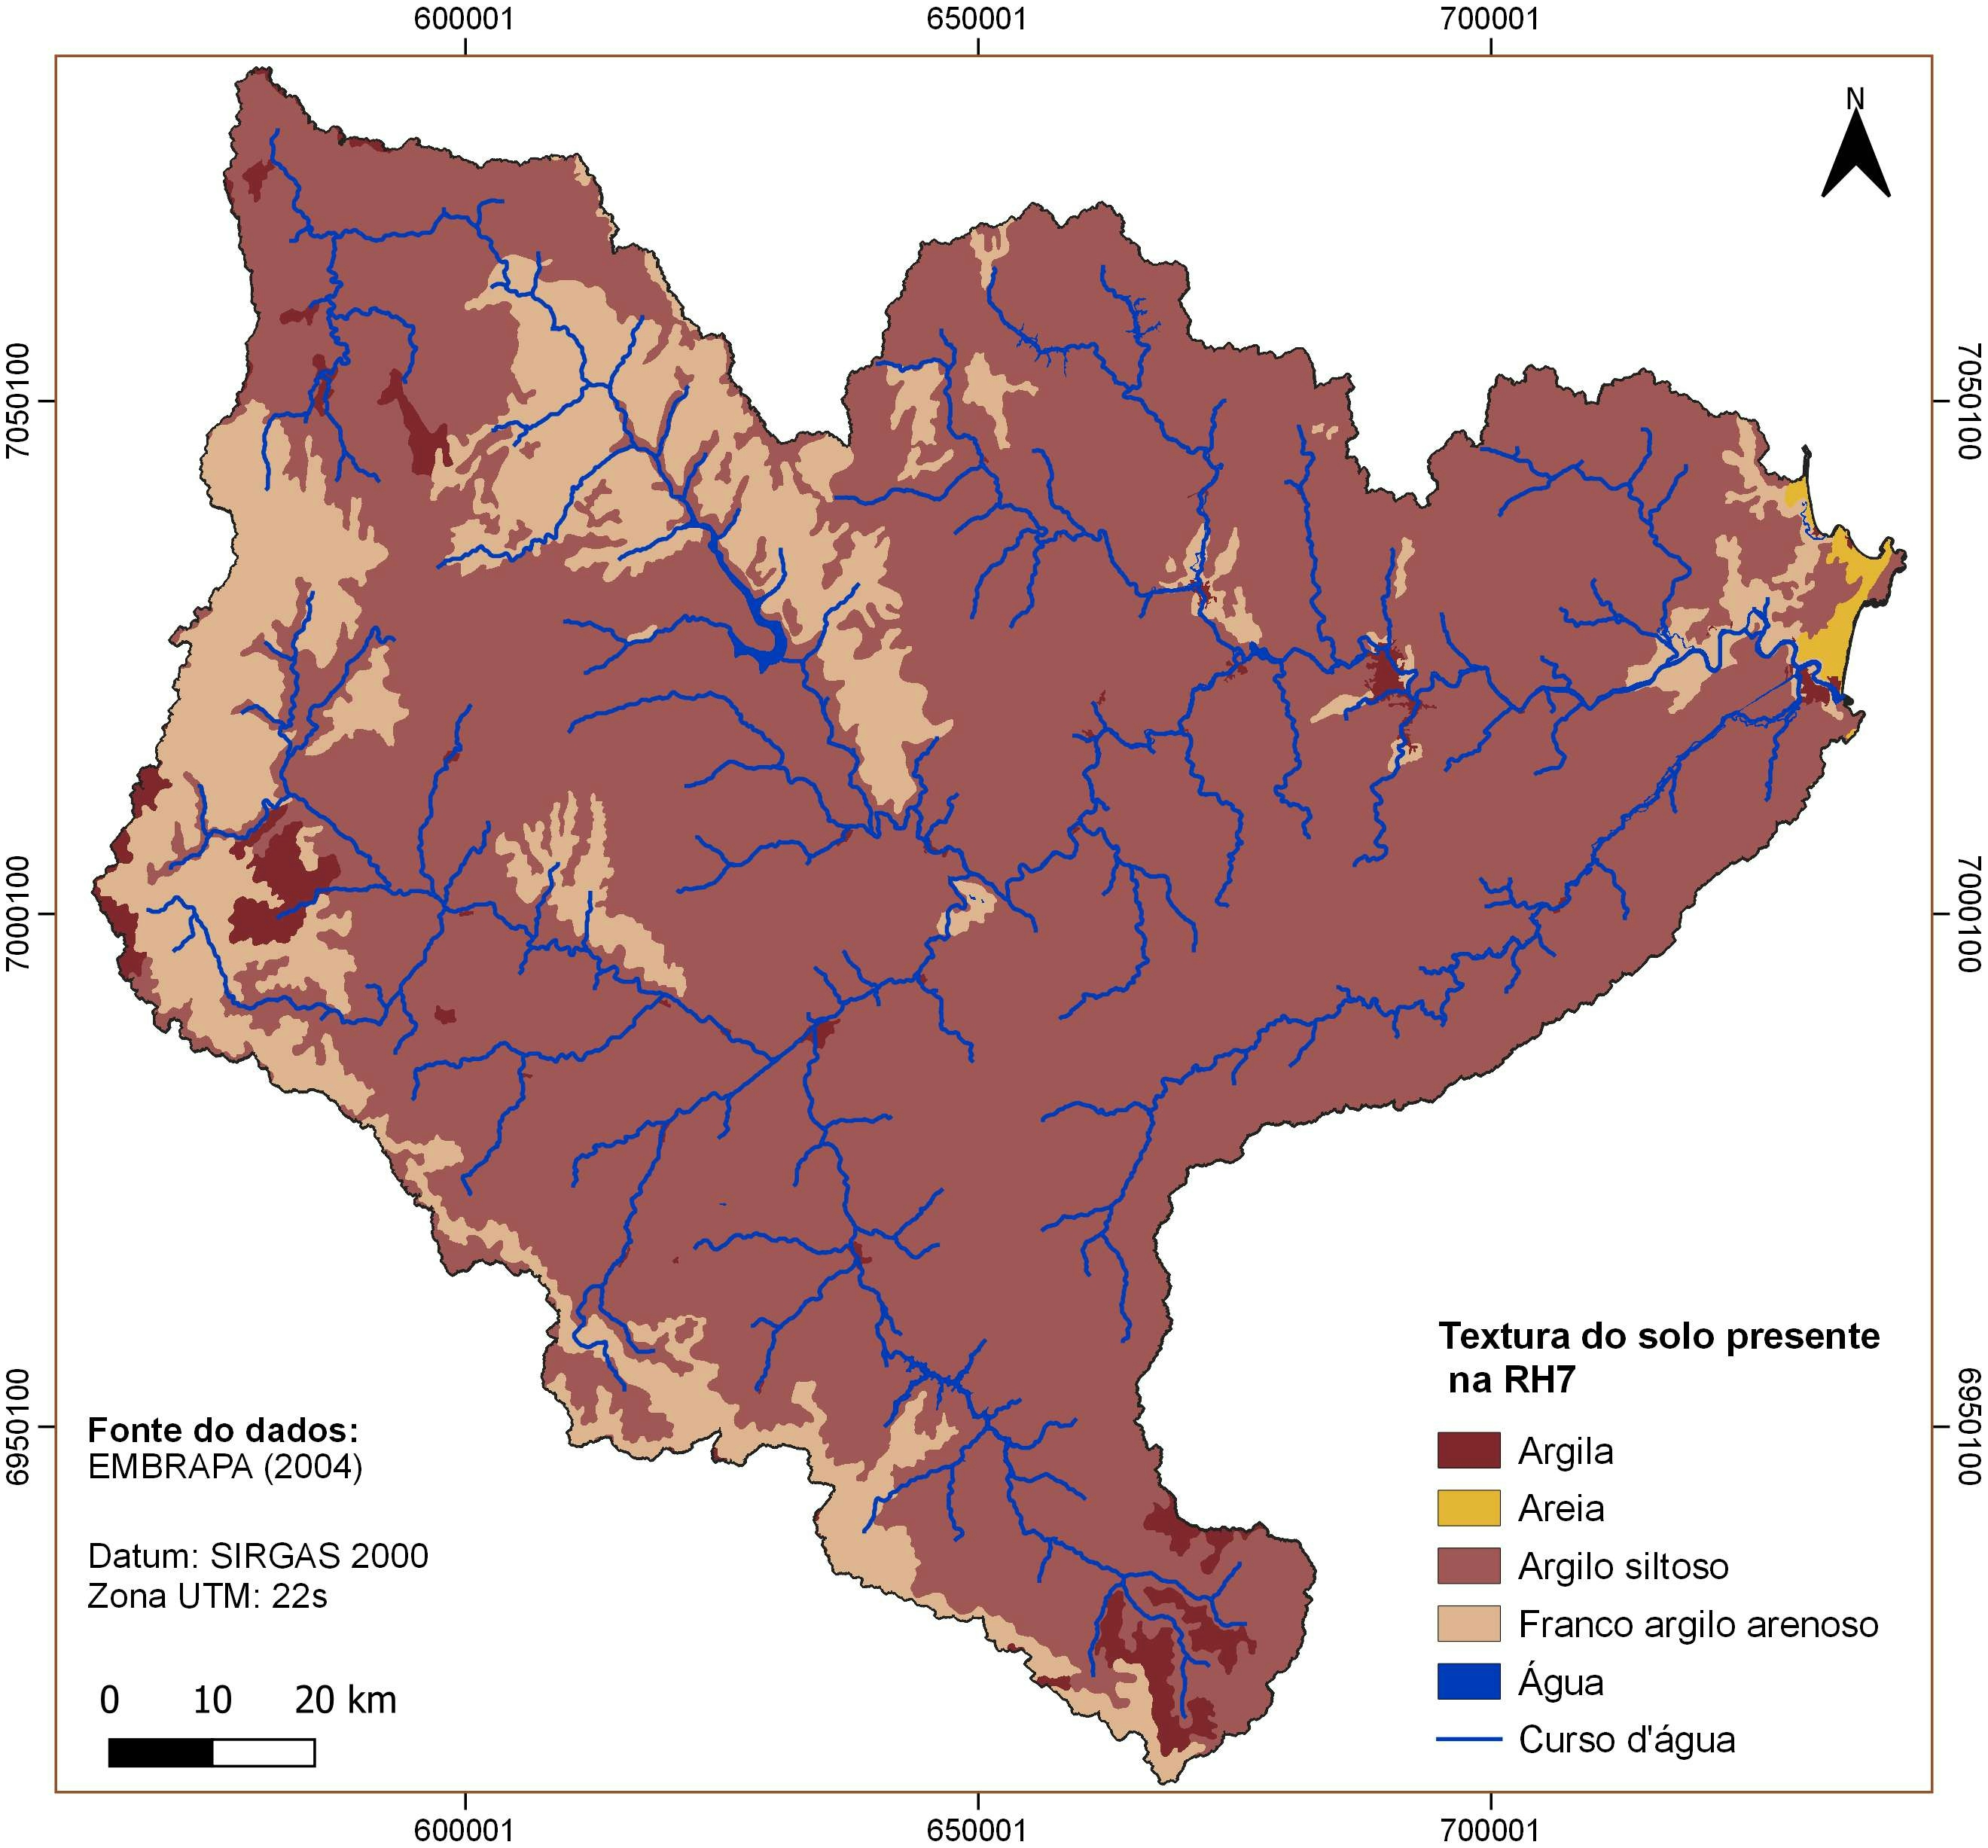 Soil map of the RH7, SC, Brazil